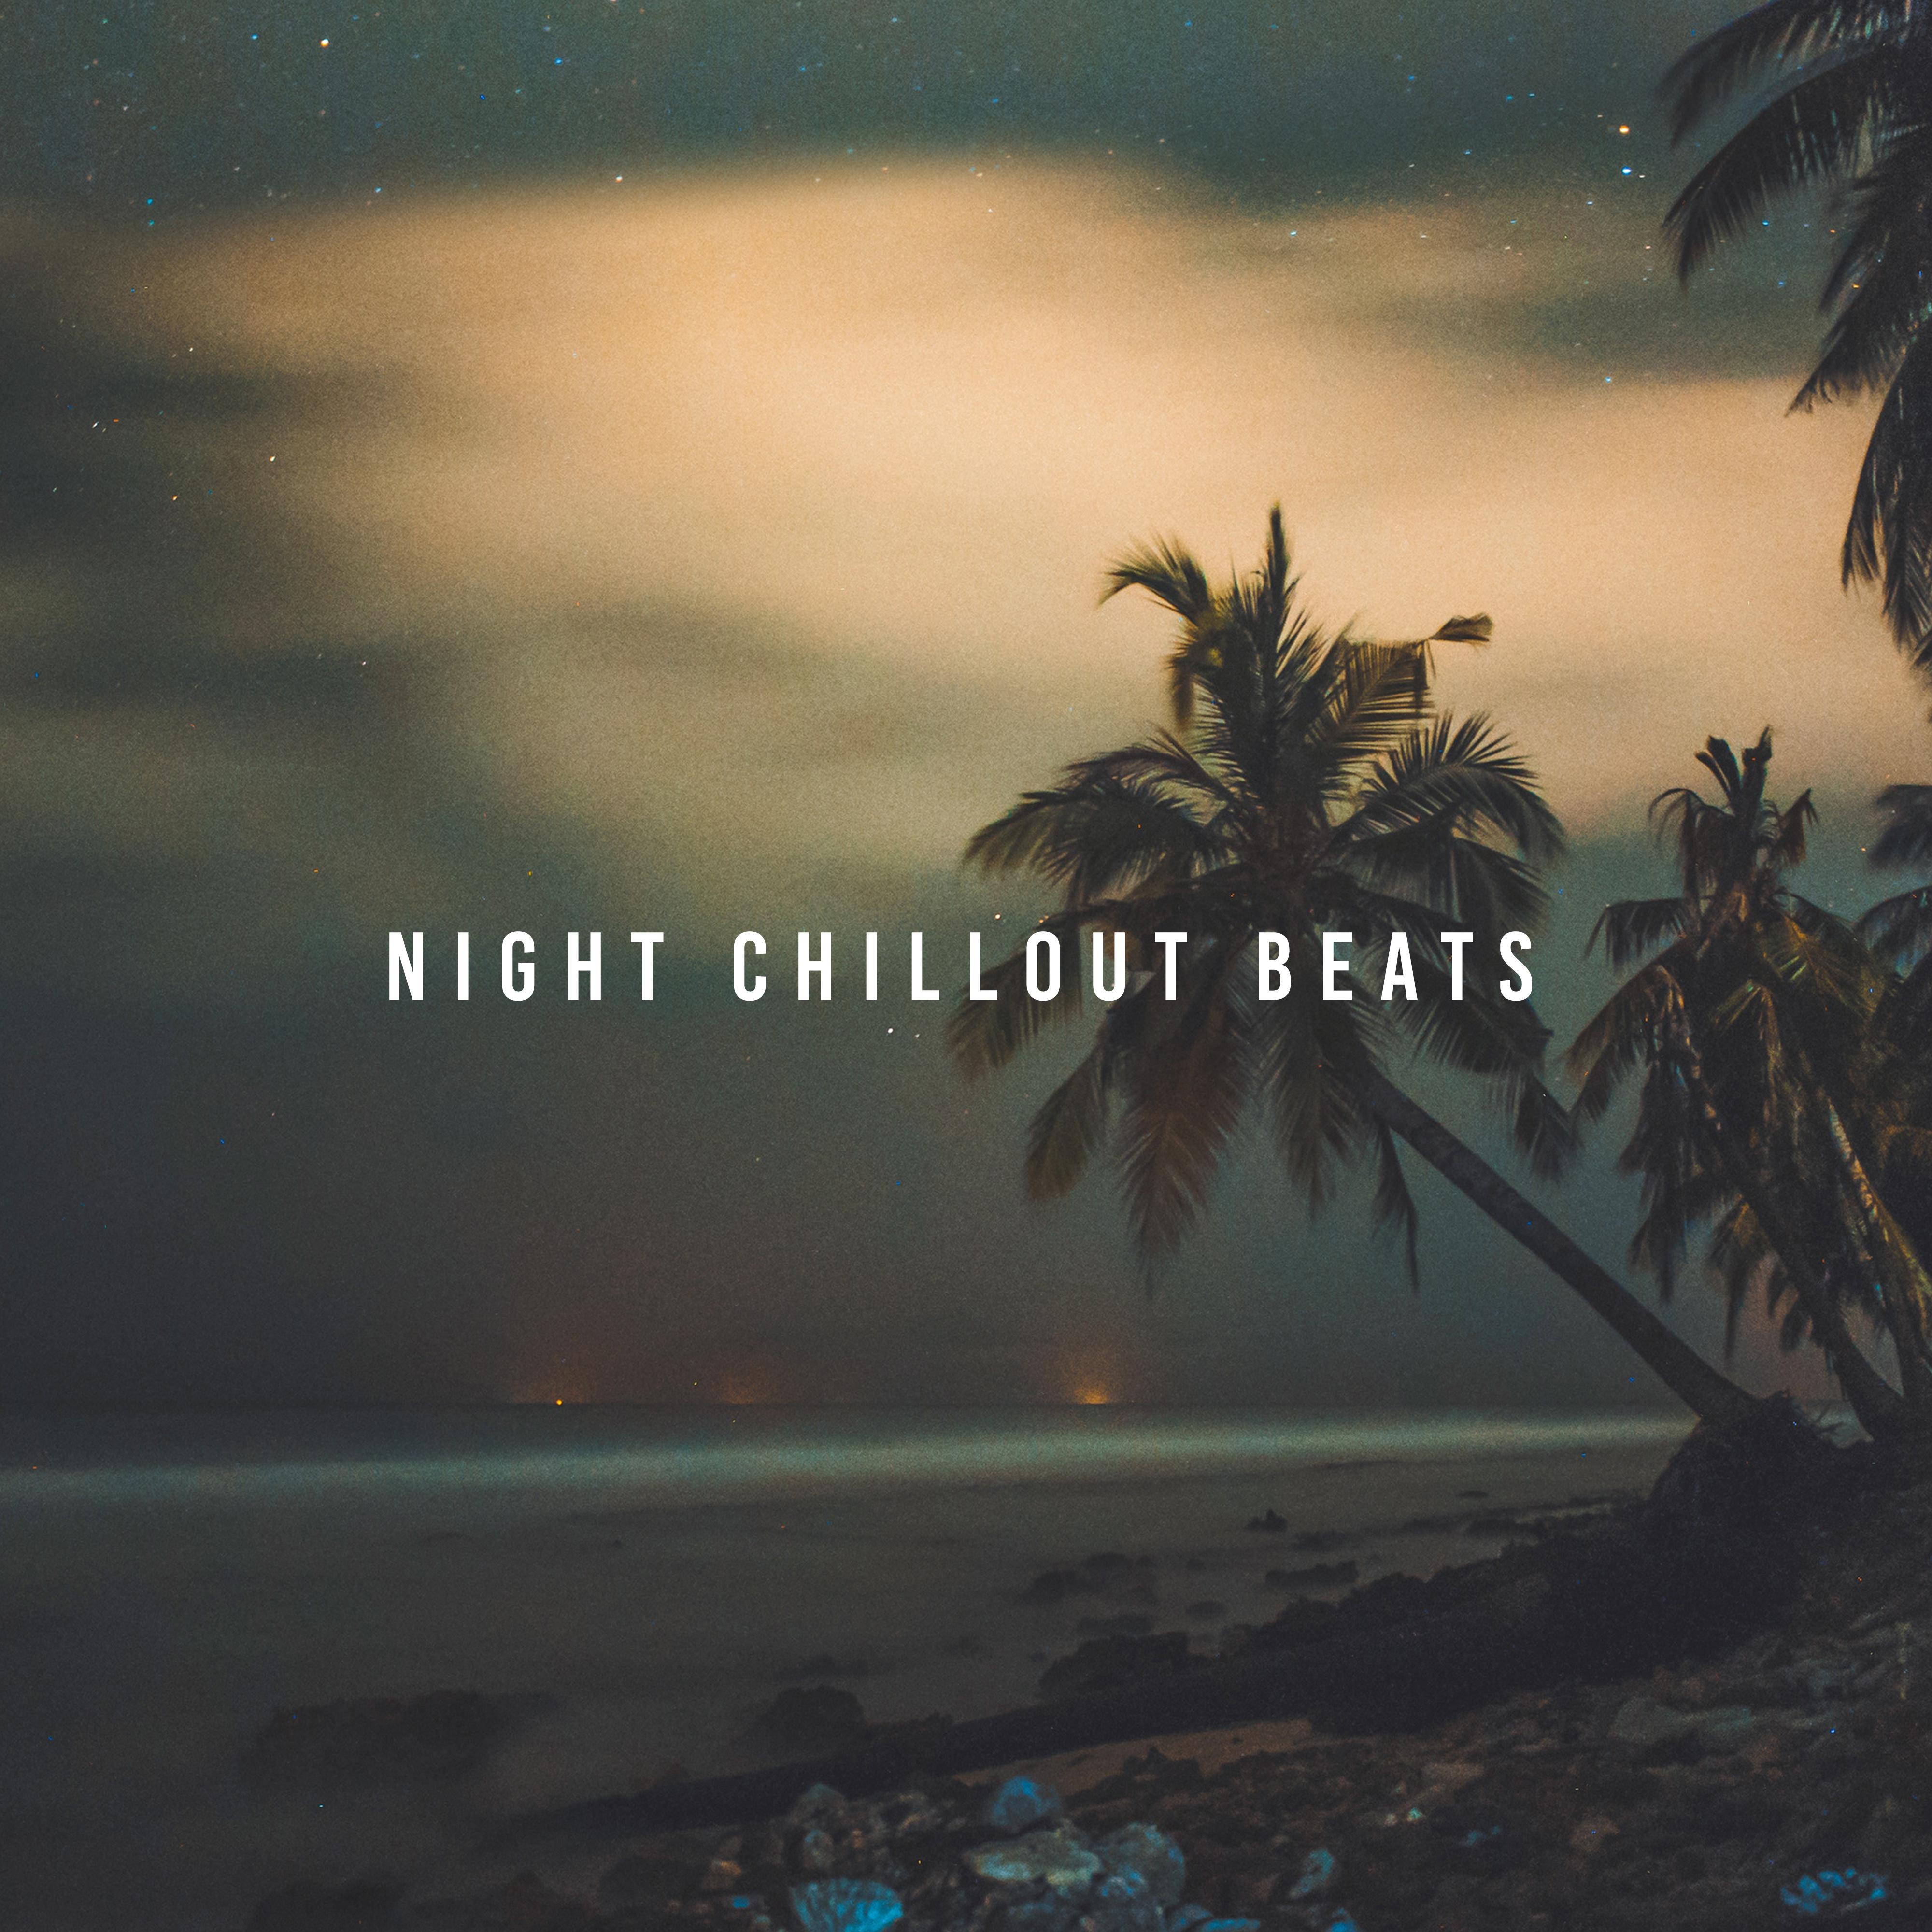 Night Chillout Beats